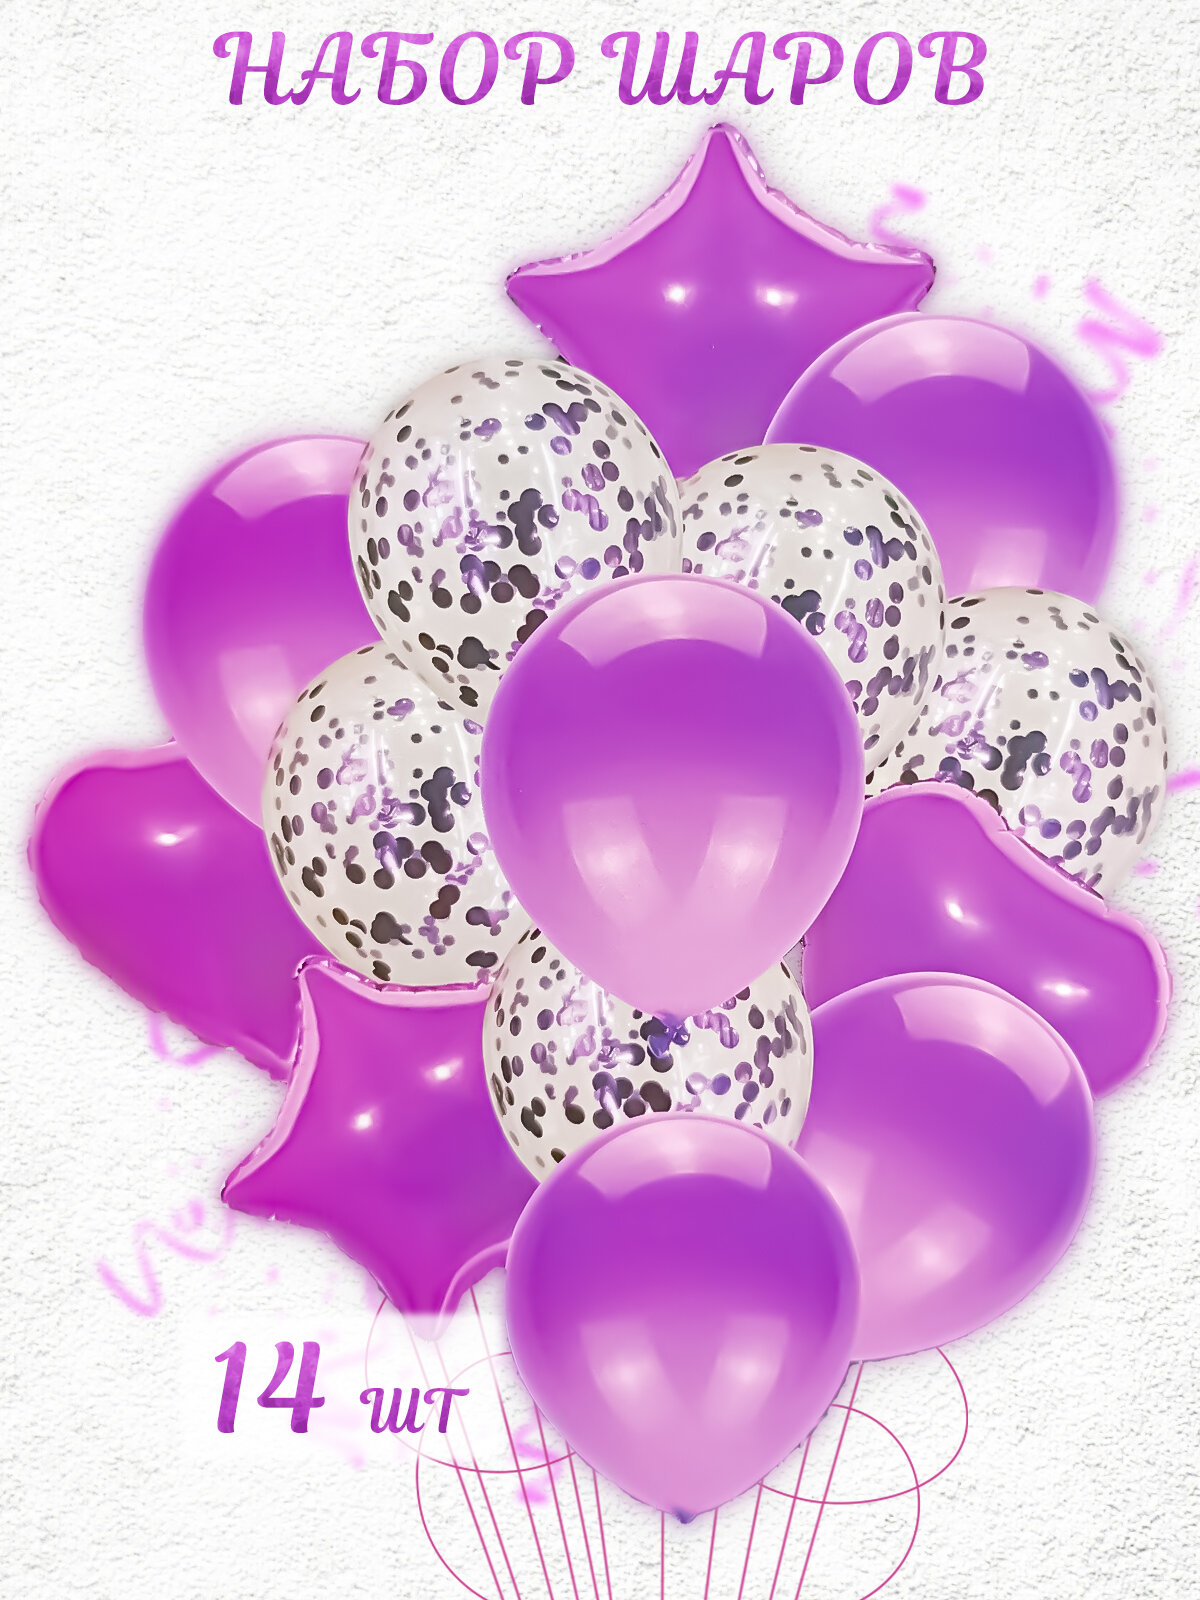 Набор воздушных шаров из фольги и латекса с конфетти 14 штук фиолетовый, украшение на день рождения